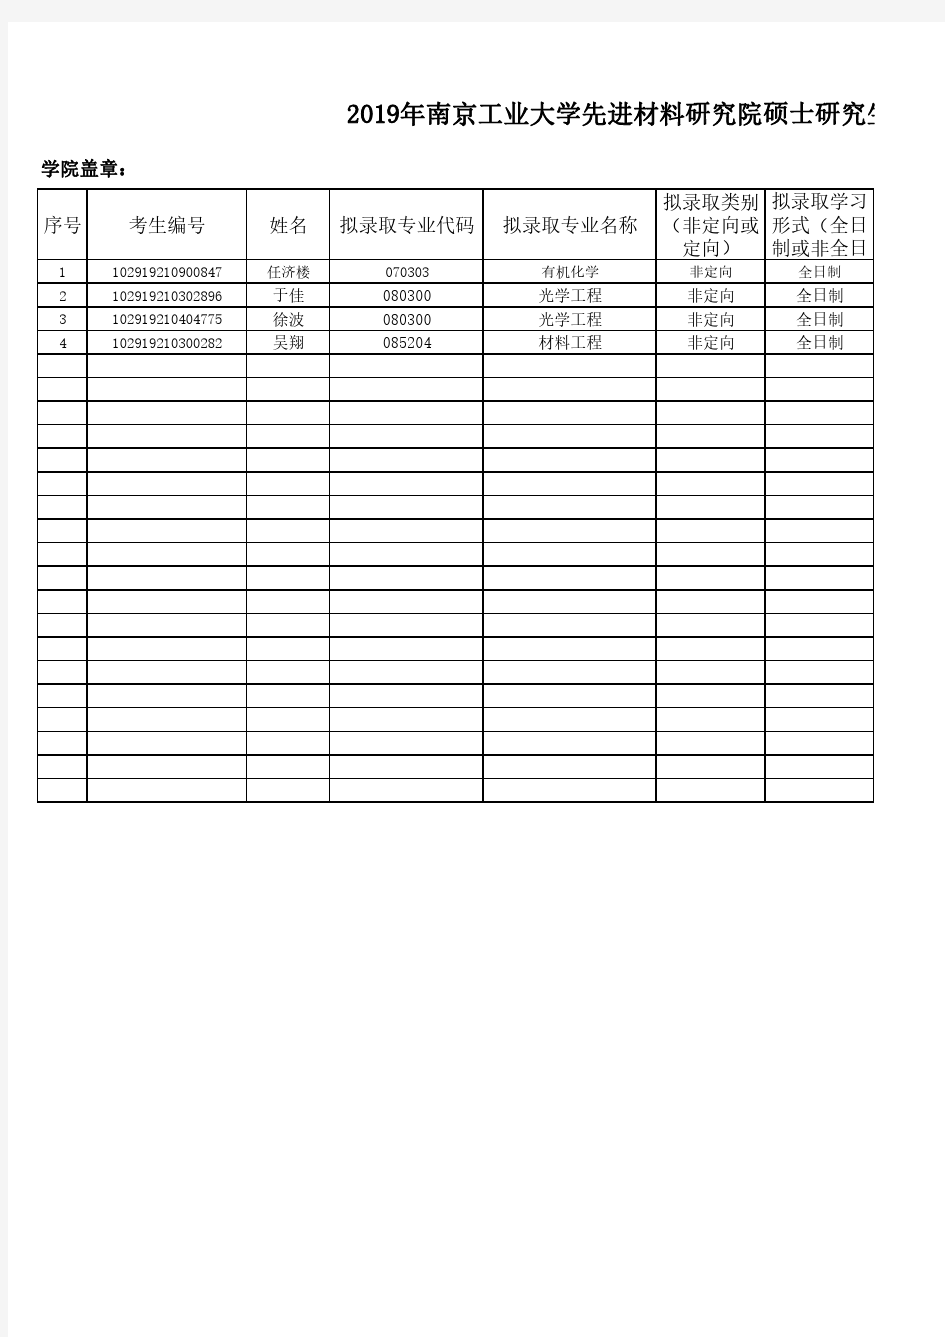 2019年南京工业大学先进材料研究院硕士研究生调剂拟录取名单